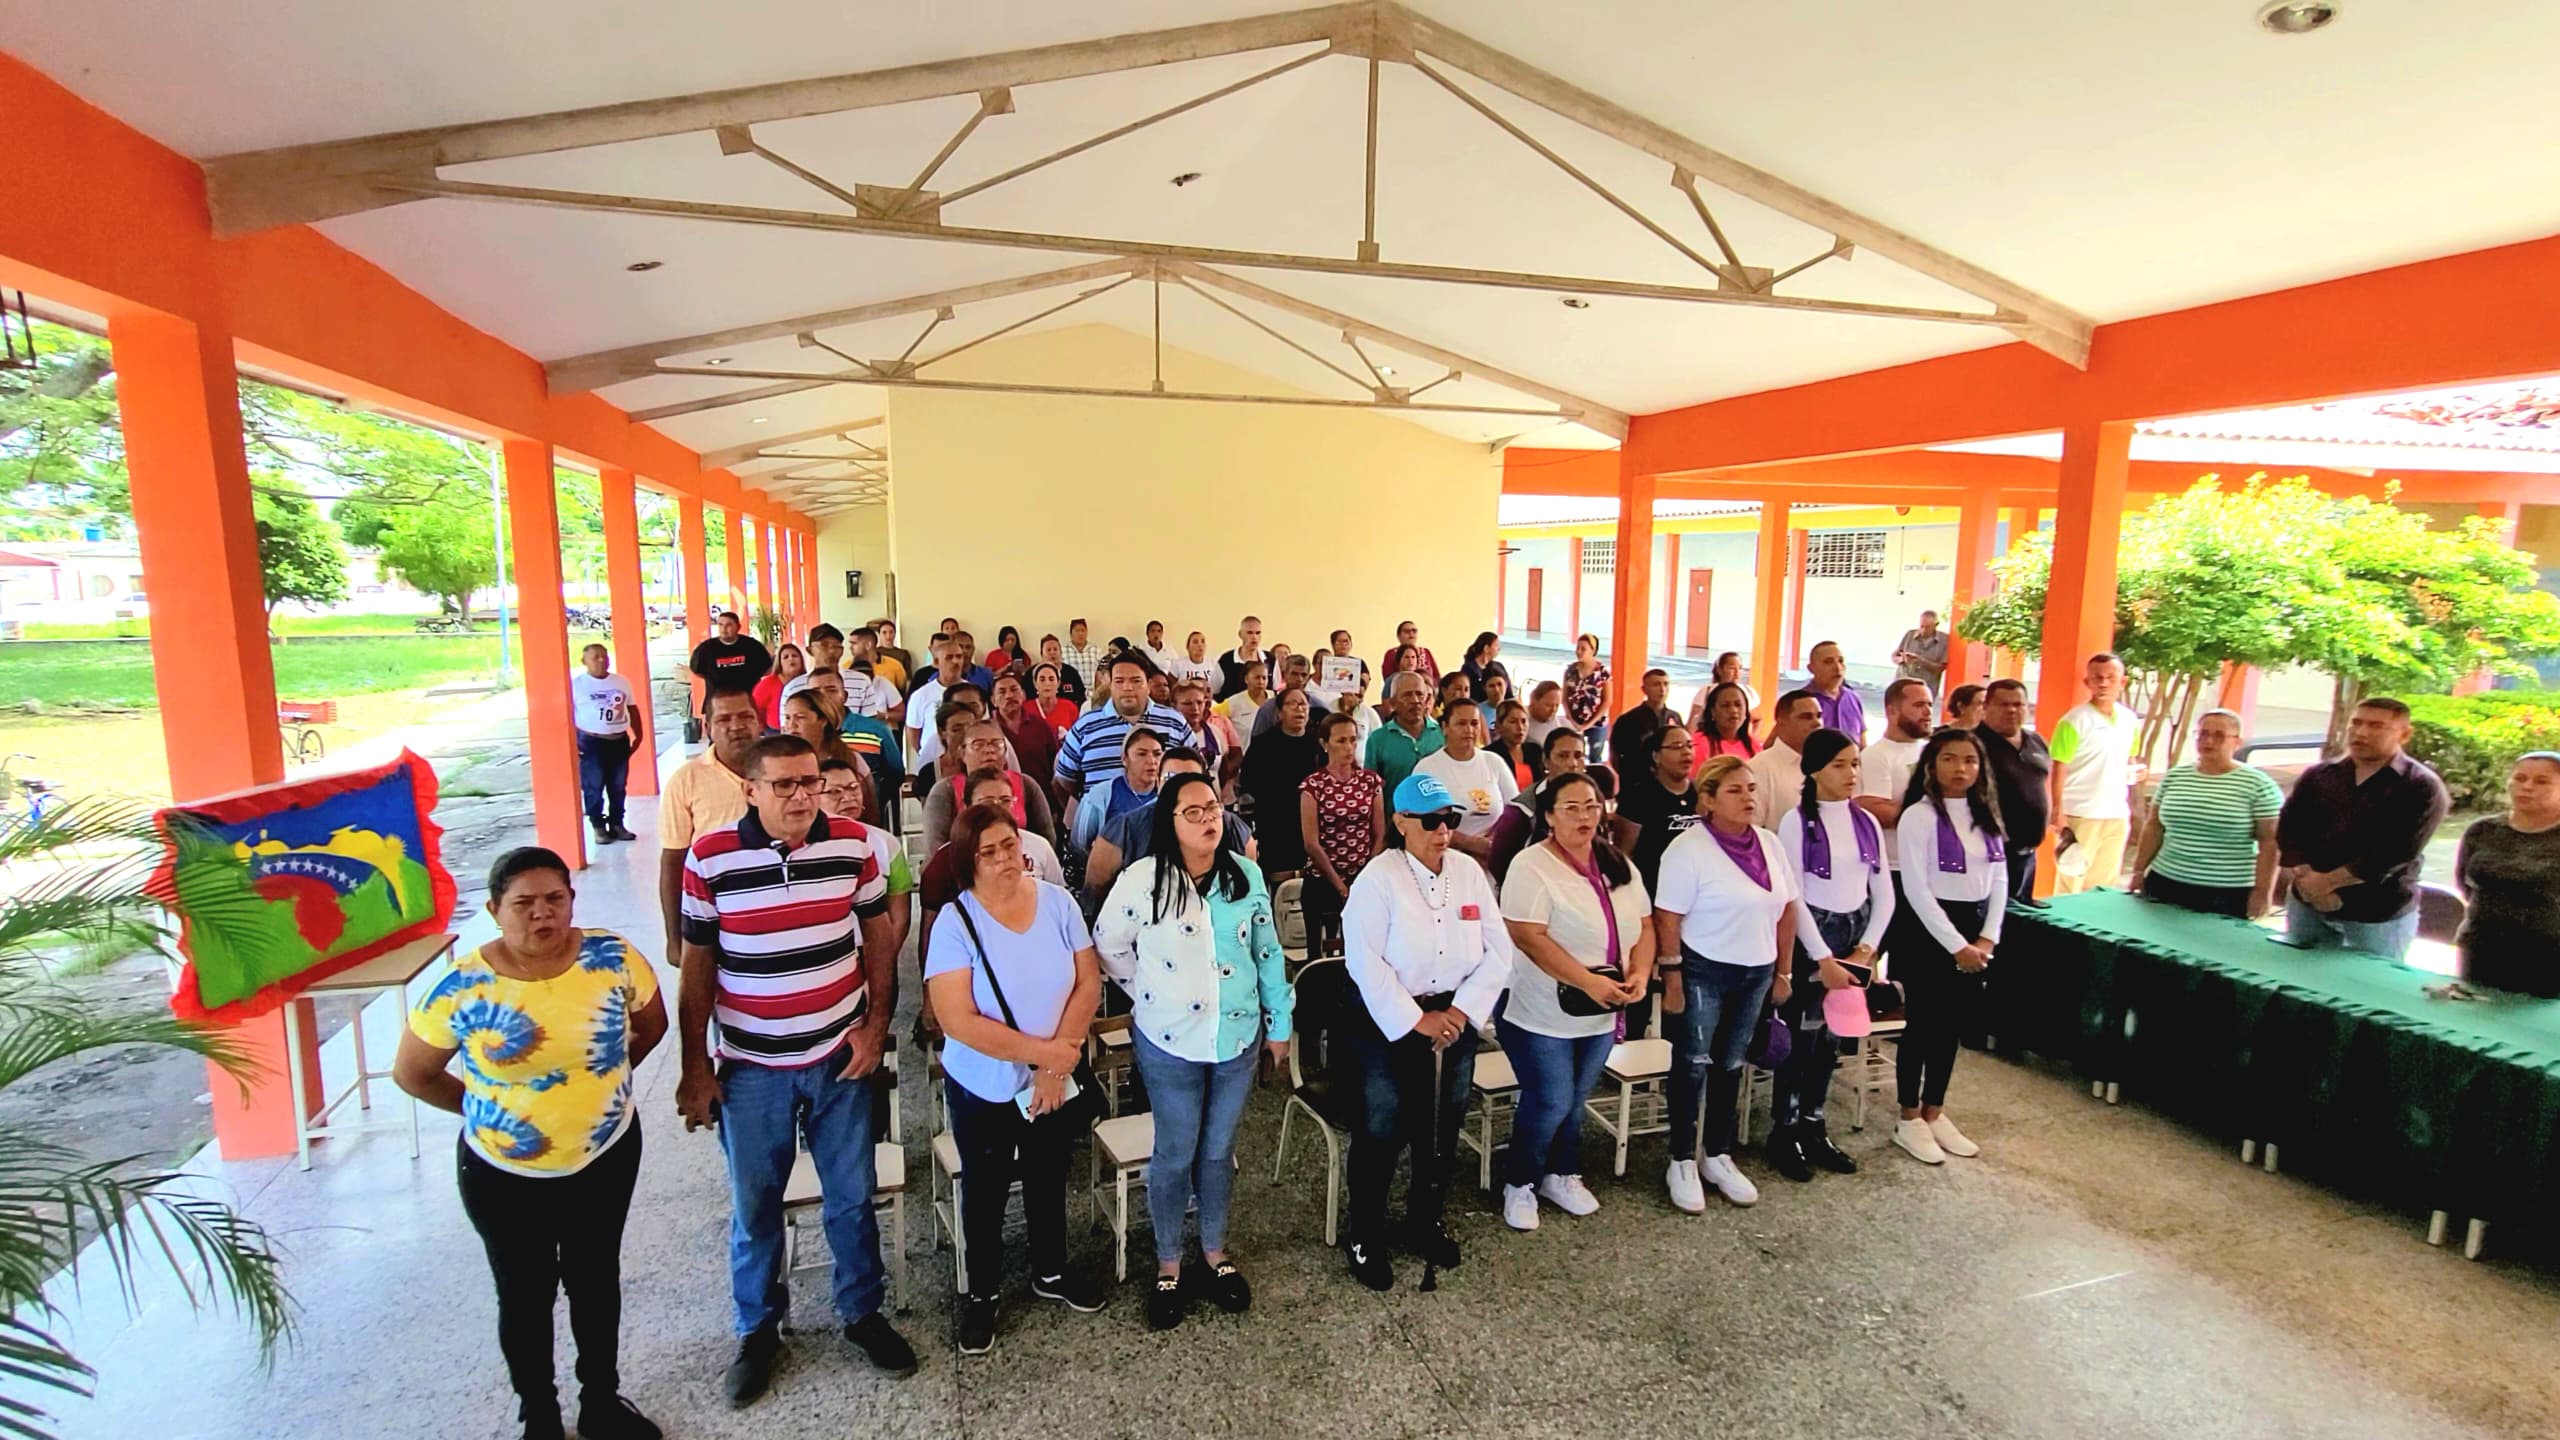 Sur del Lago: Municipio Colón juramentó Comando de Campaña Venezuela Toda en defensa del Esequibo